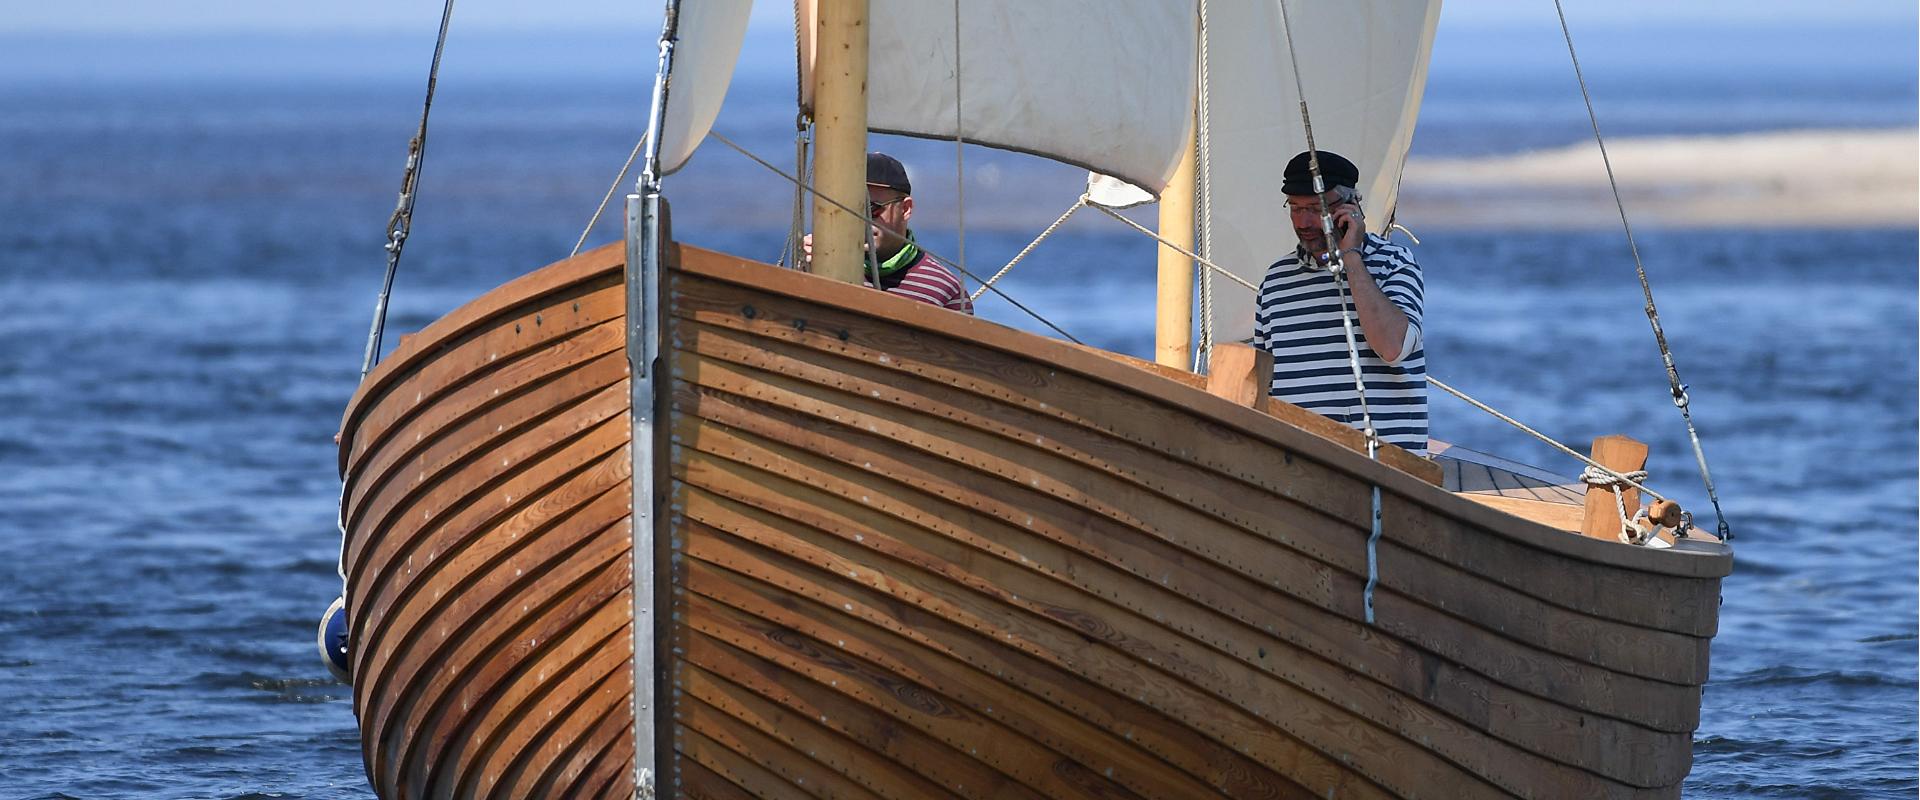 Laevasõit puupurjekaga "Tütarsaare Aino"